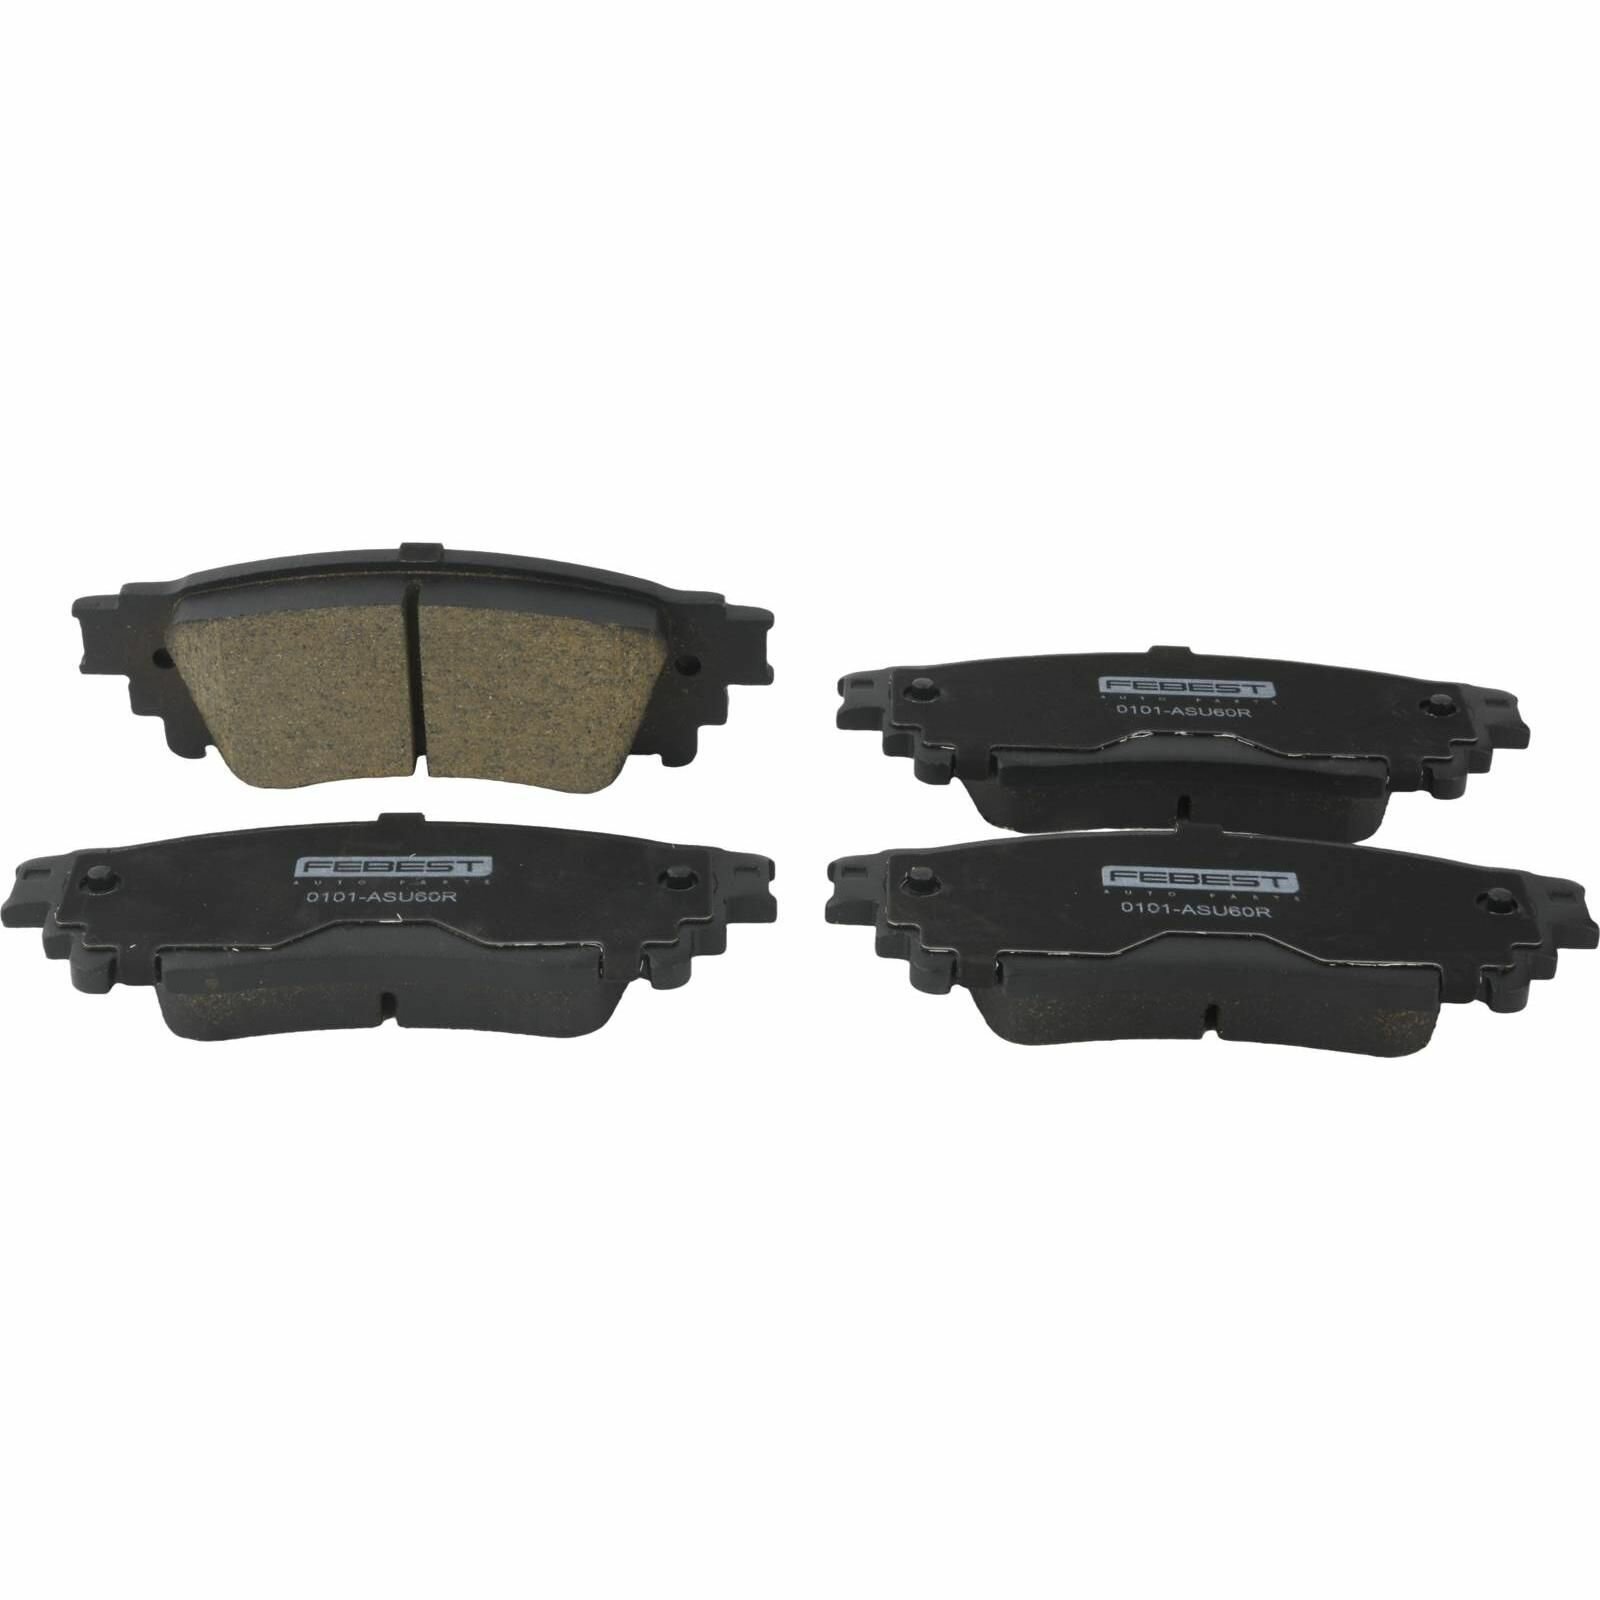 Колодки тормозные задние (с противоскрипной пластиной) для автомобилей LEXUS 0101-ASU60R Febest